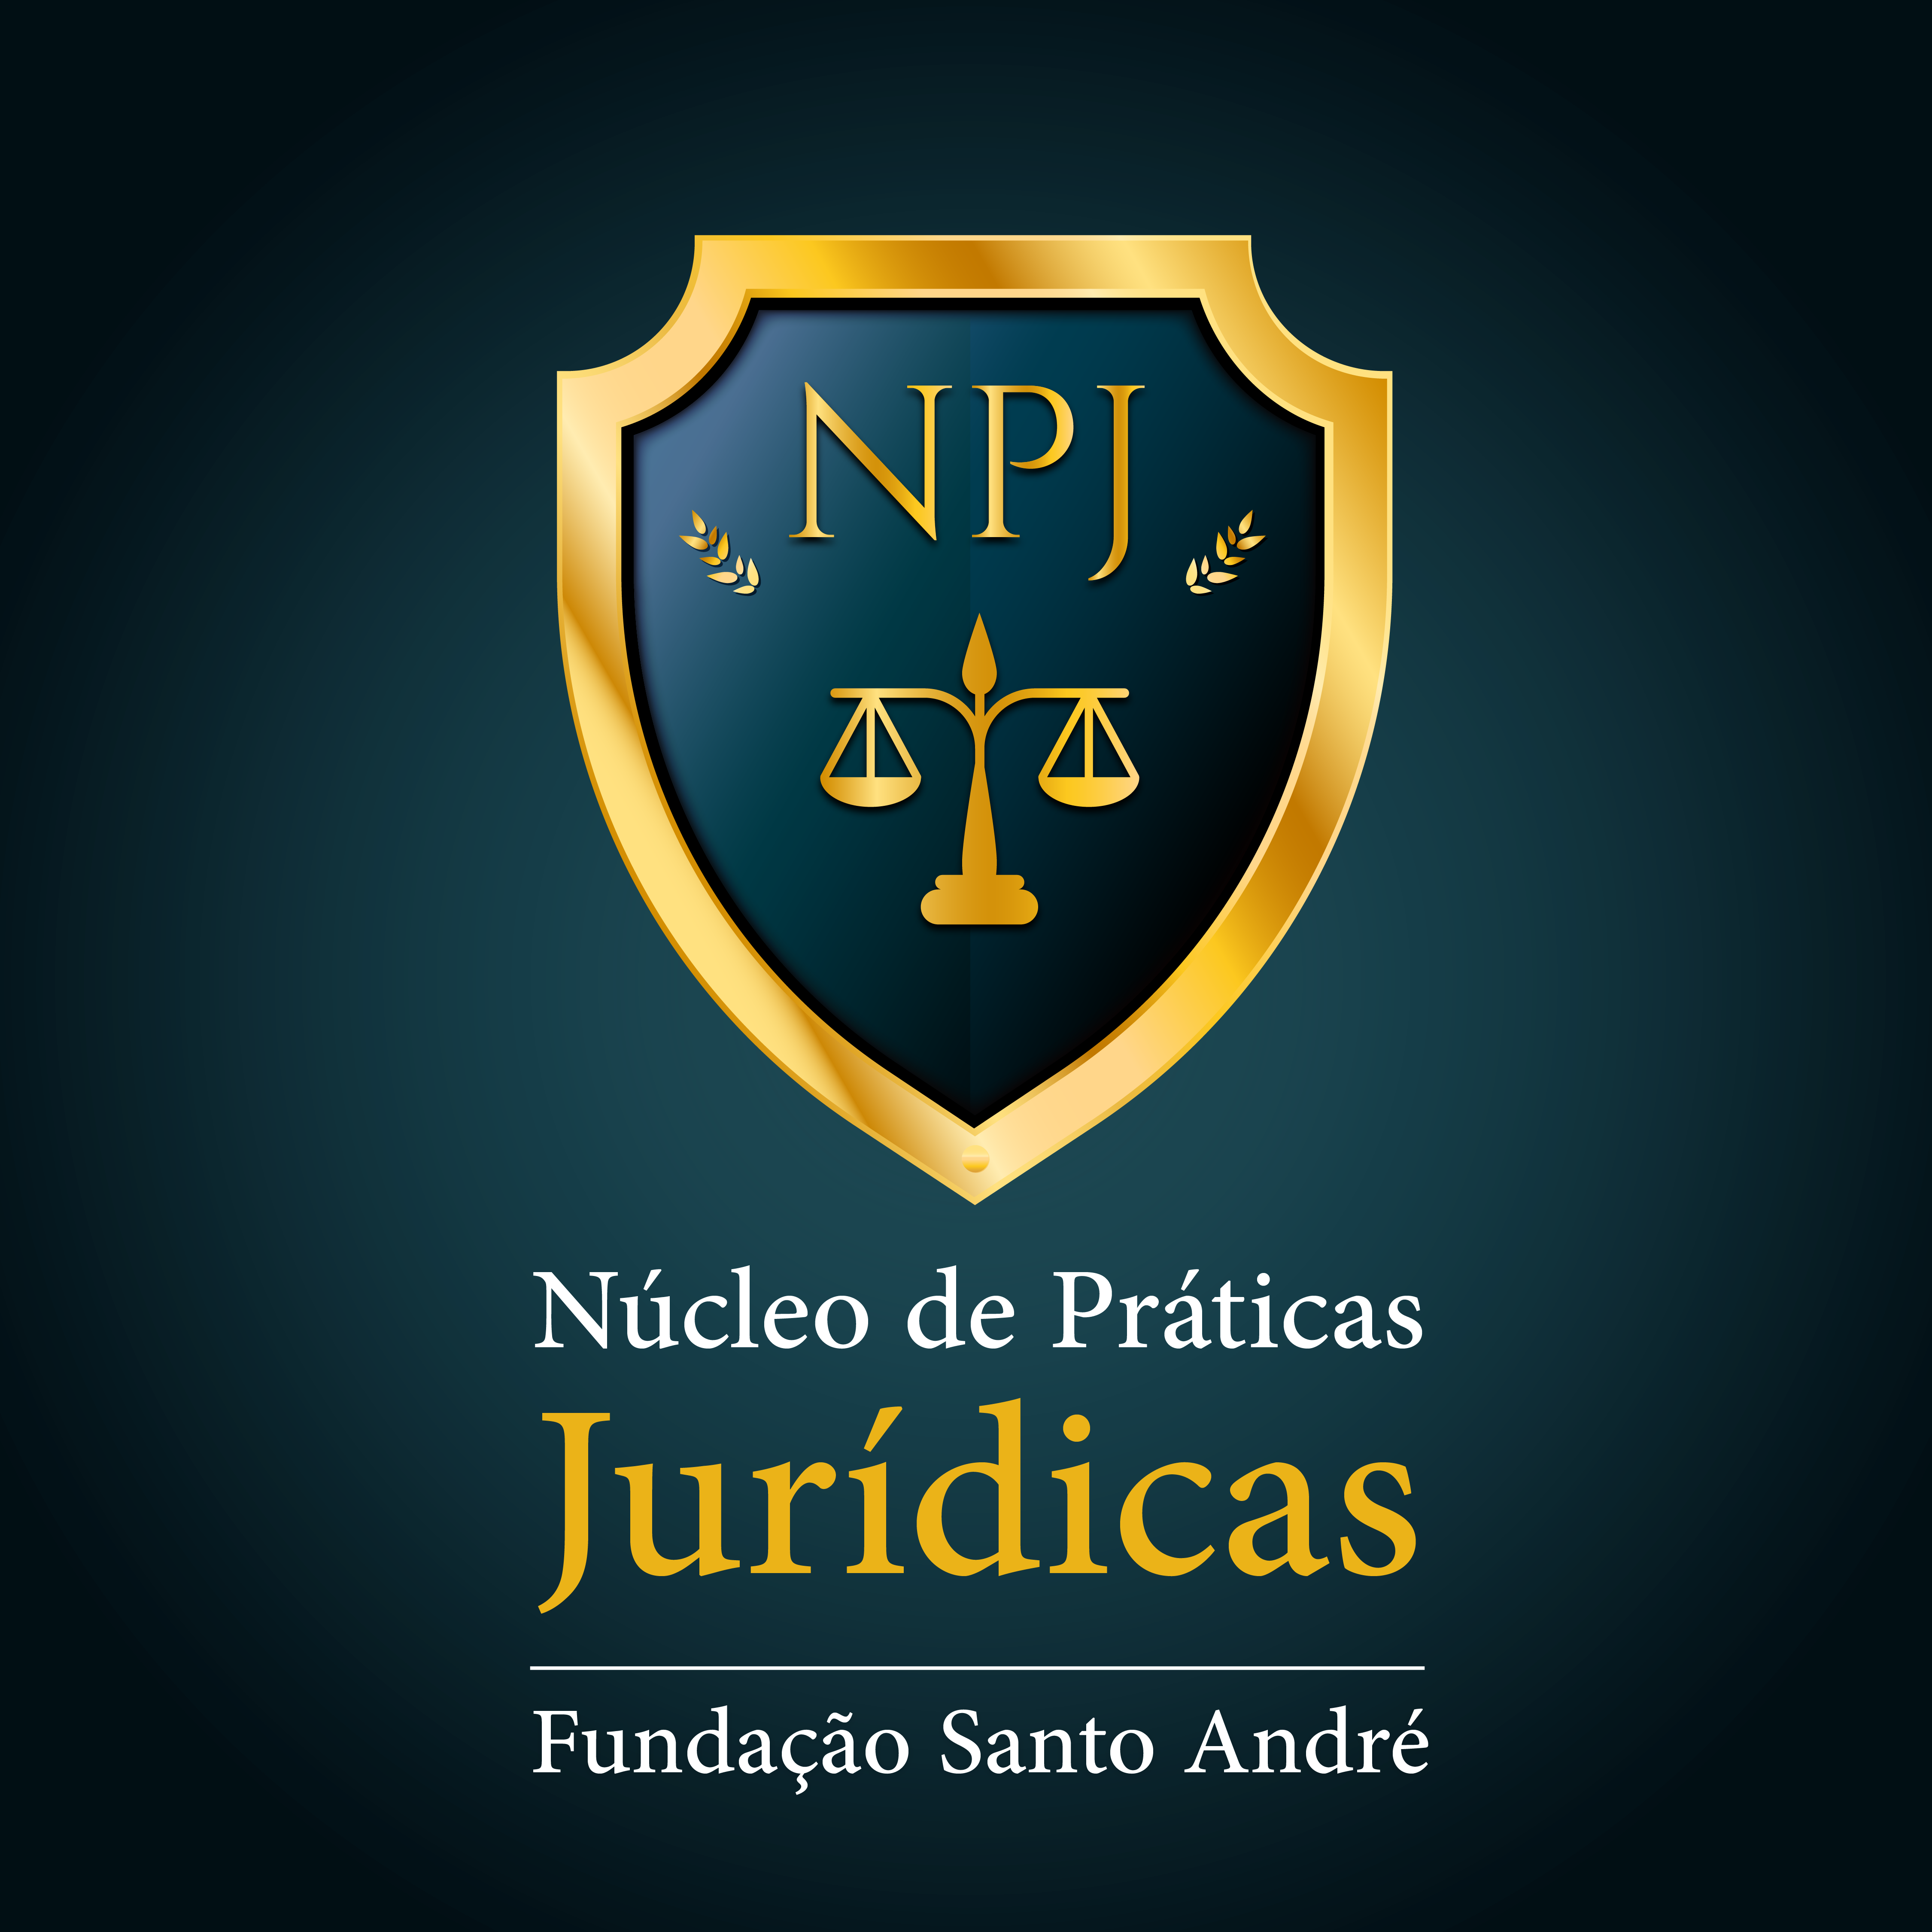 Núcleo de Práticas Jurídicas, do curso de Direito do Centro Universitário Fundação Santo André, divulga as atividades ocorridas em 2021